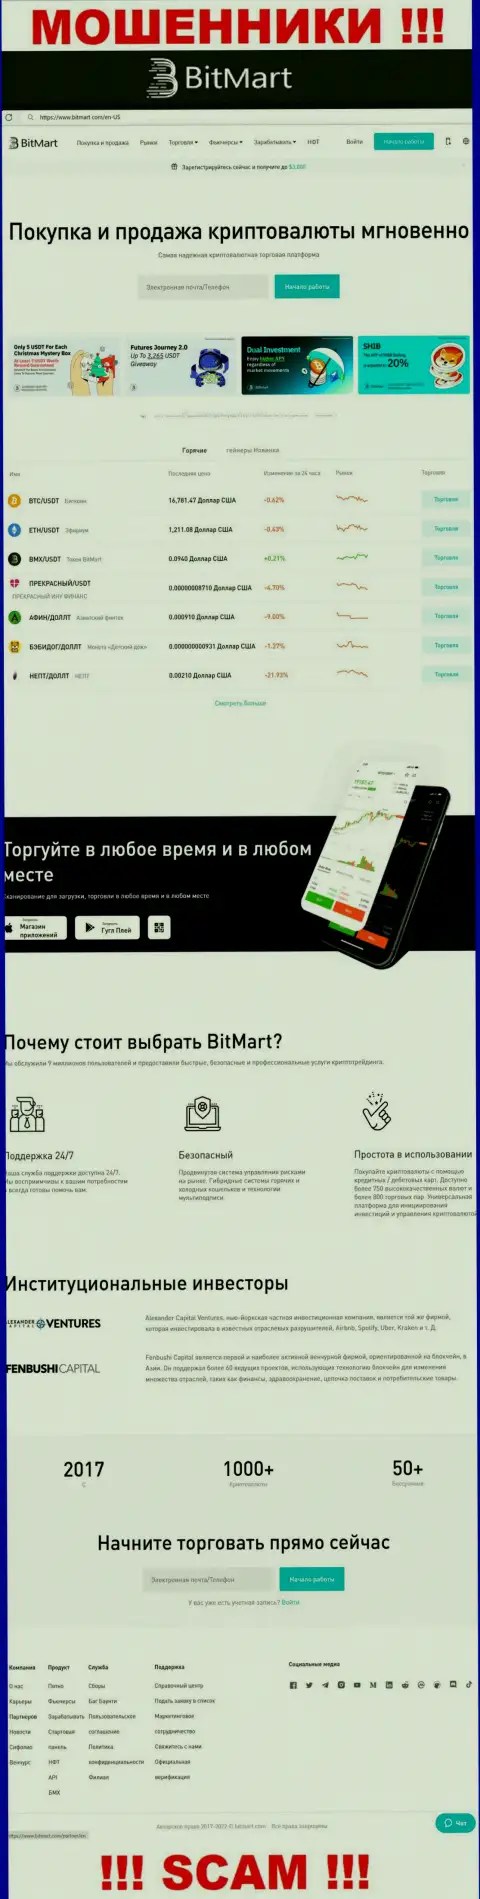 Внешний вид веб-сайта противозаконно действующей компании BitMart